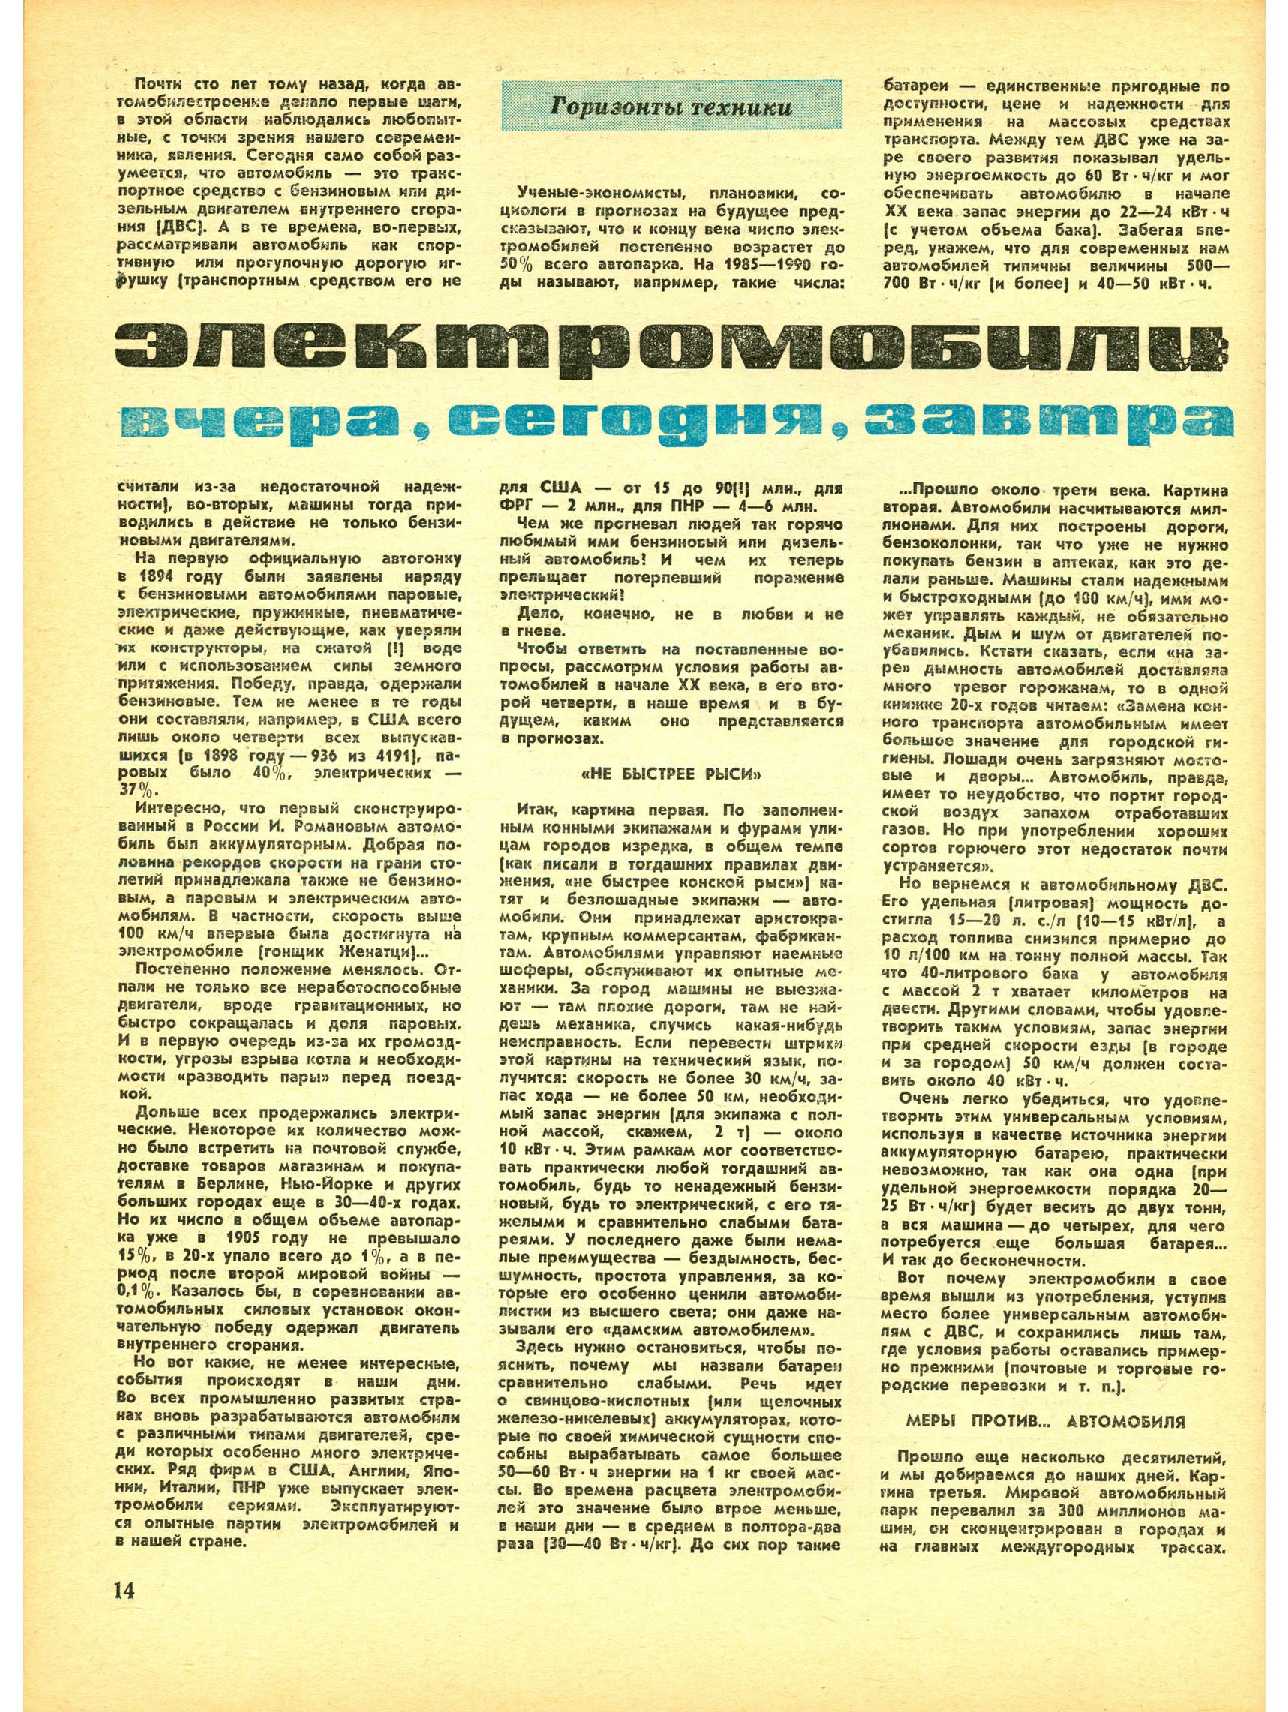 МК 10, 1977, 14 c.